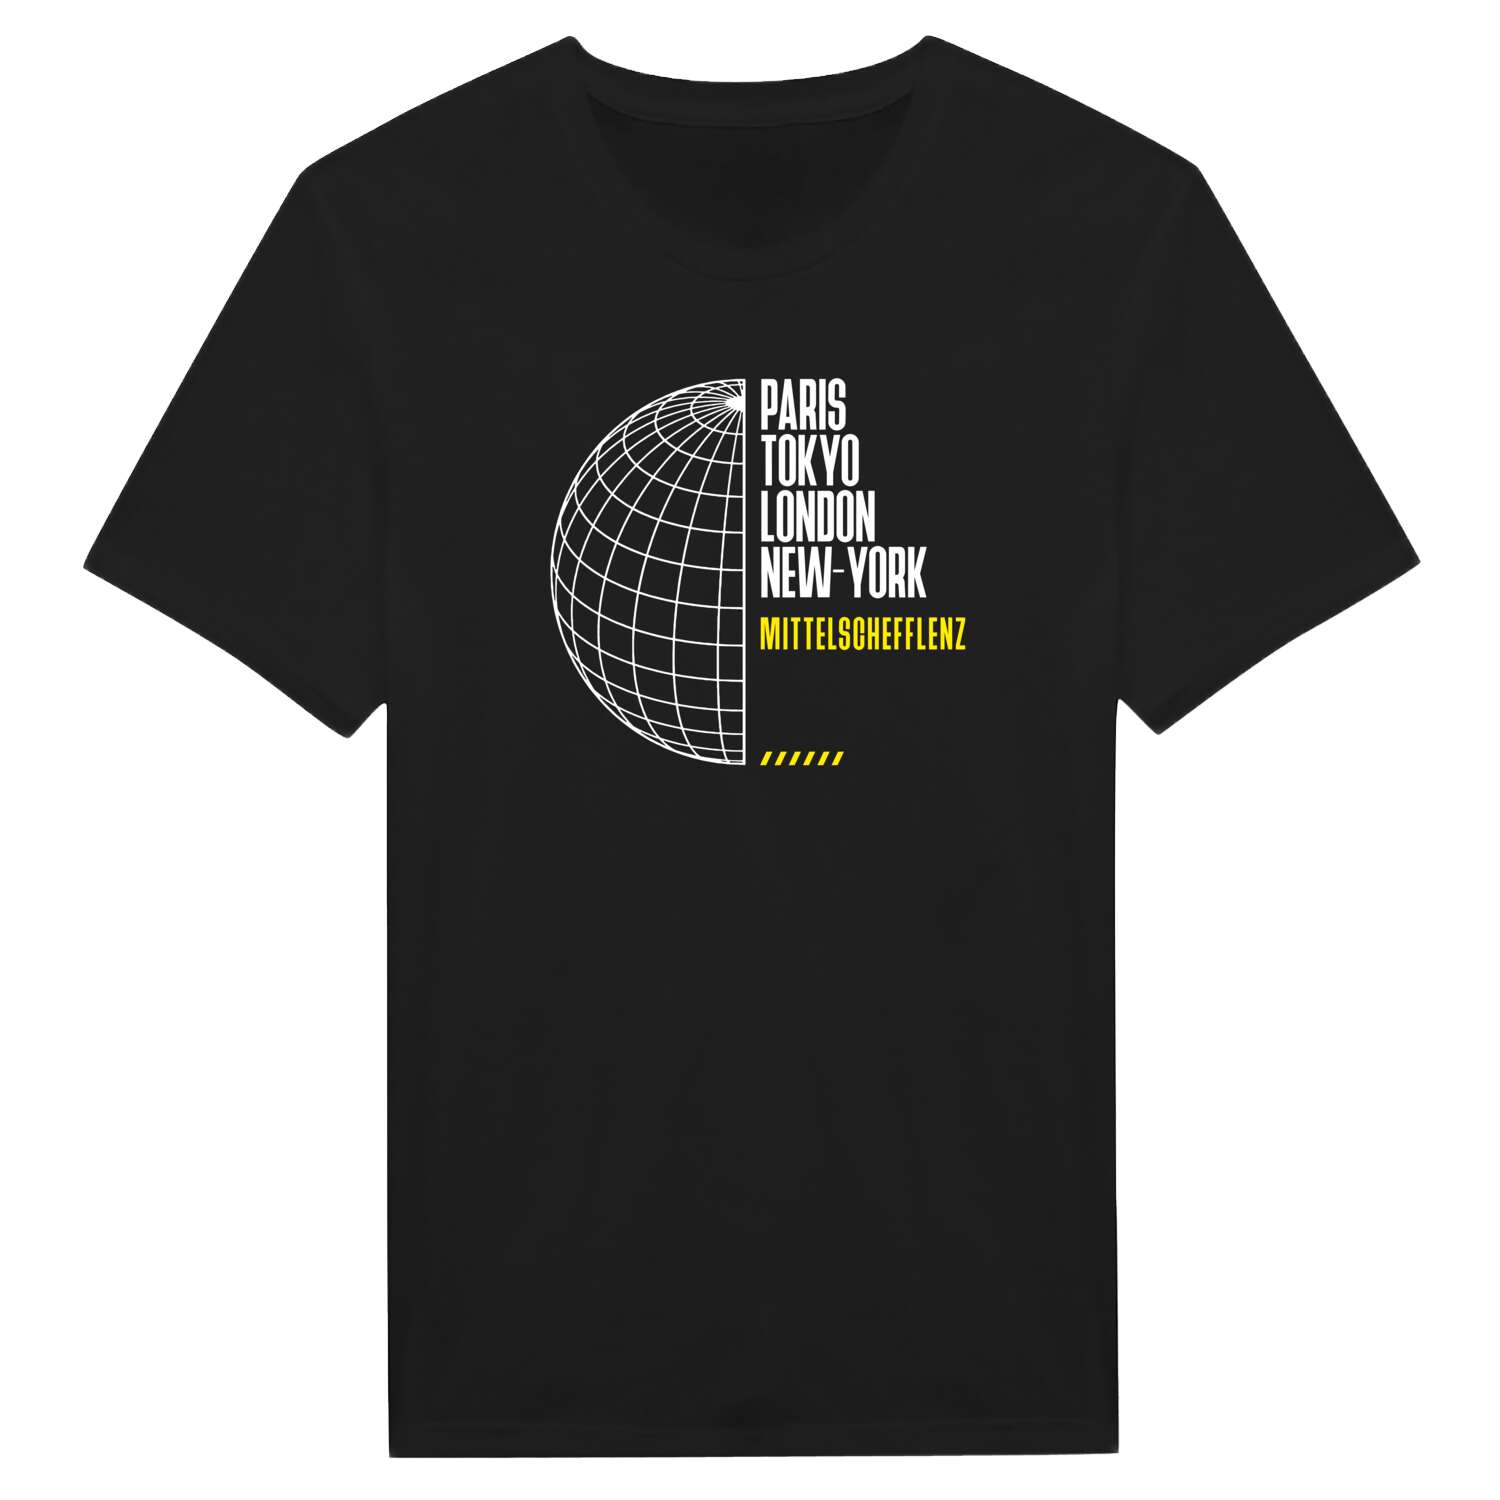 Mittelschefflenz T-Shirt »Paris Tokyo London«